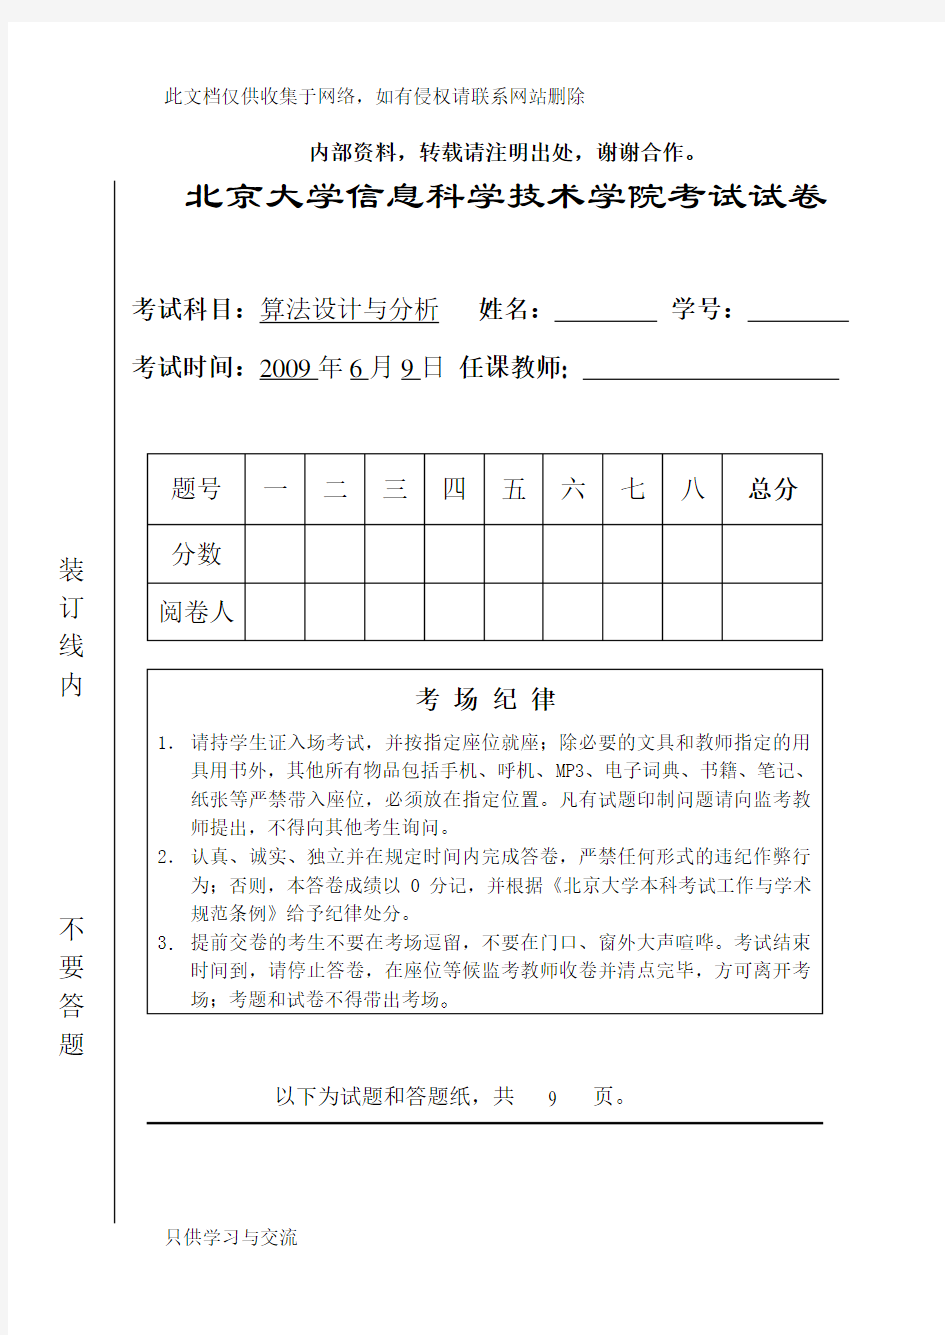 北京大学算法设计与分析课09年期末试题教学内容